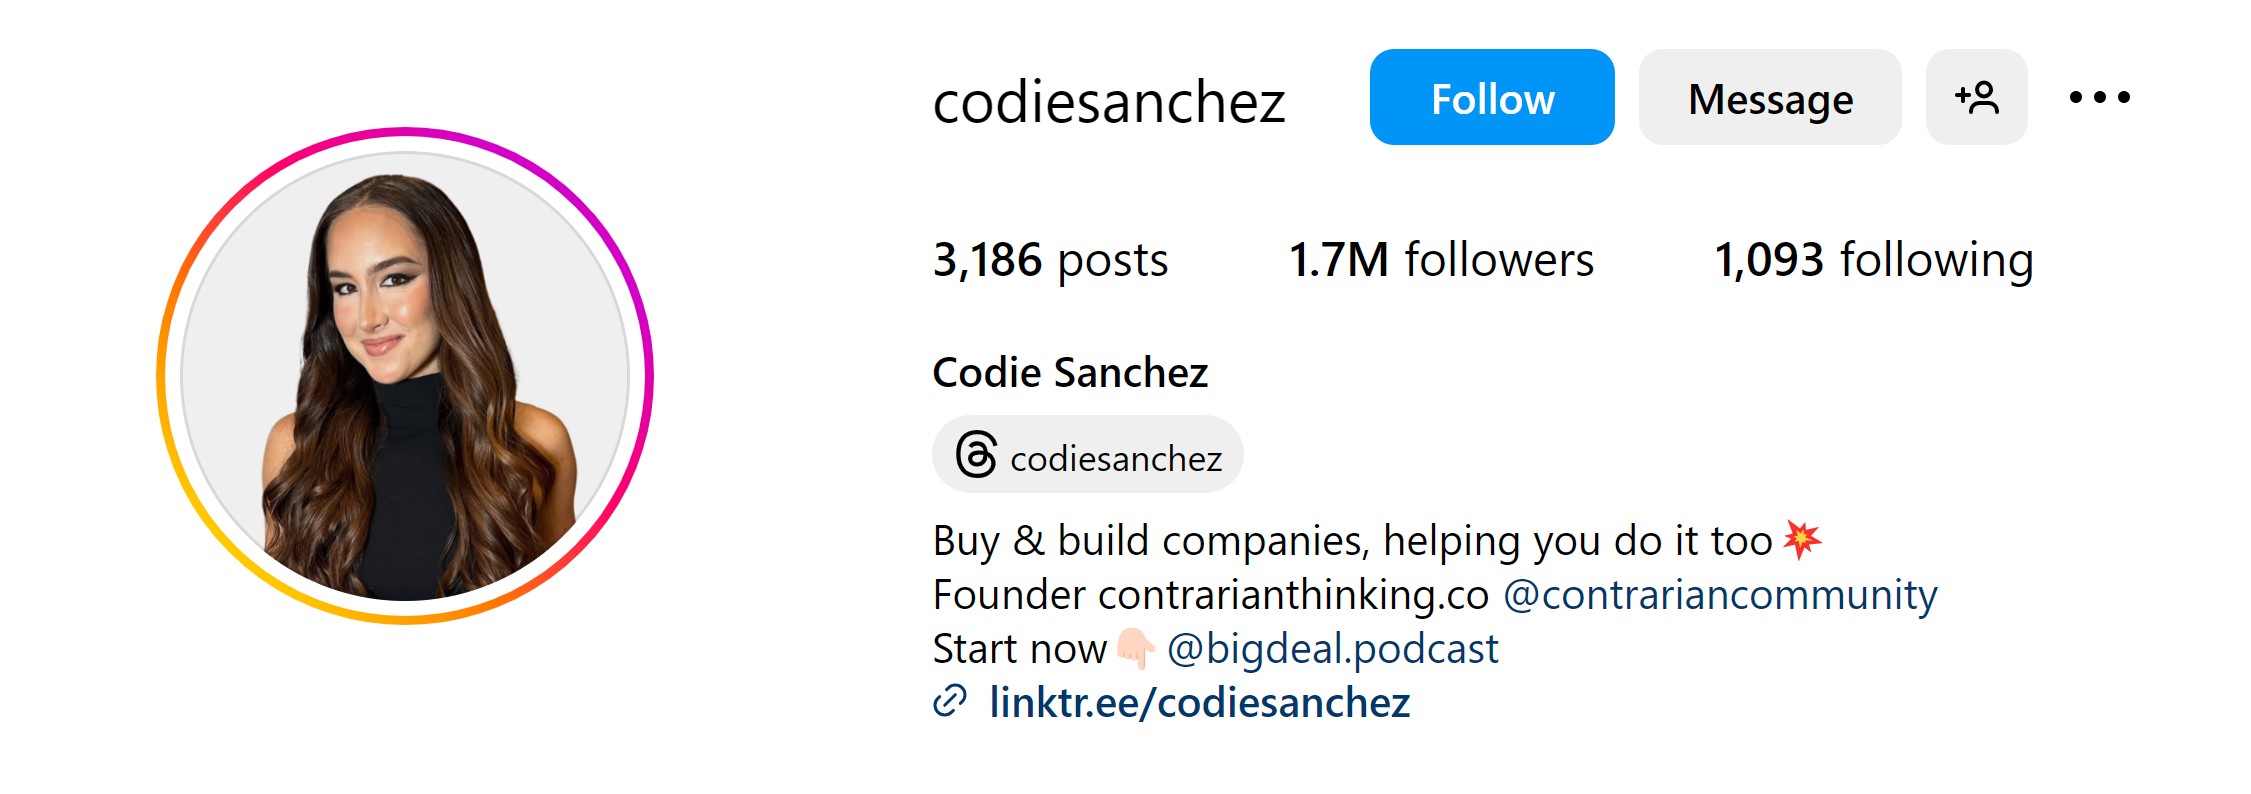 Who Is Codie Sanchez